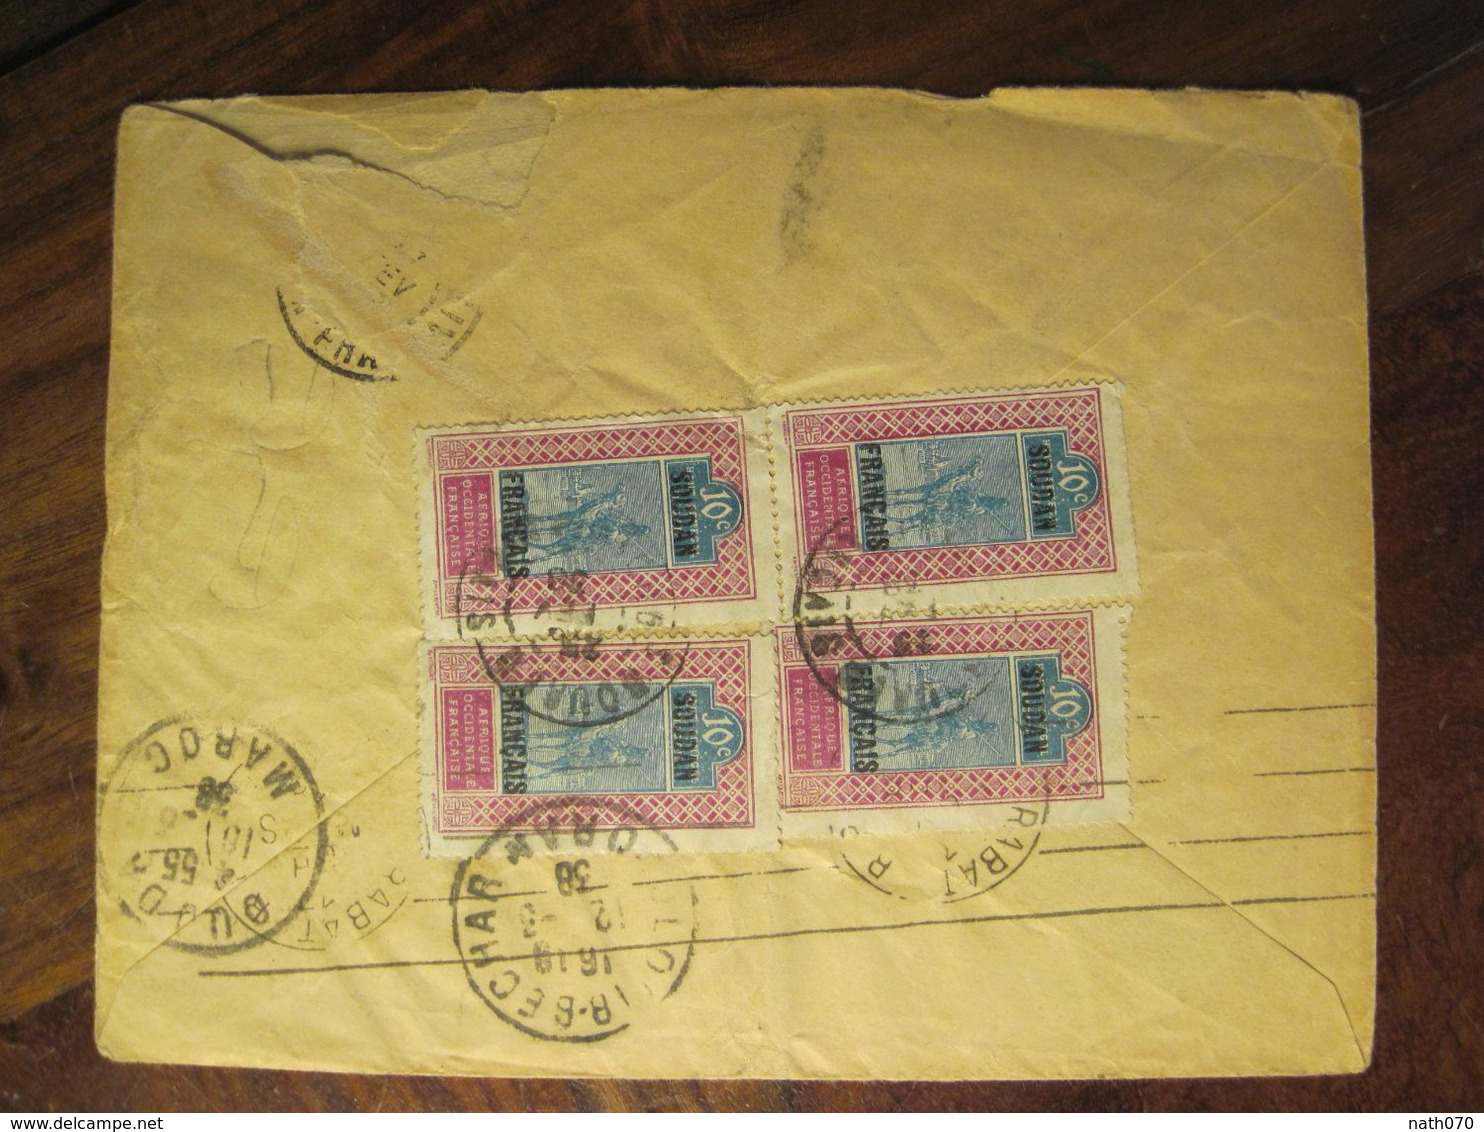 SOUDAN Français 1938 BOUREN France Pour Maroc Algérie Colomb Bechar RTS Lettre Enveloppe Cover Colonie Mali AOF - Covers & Documents